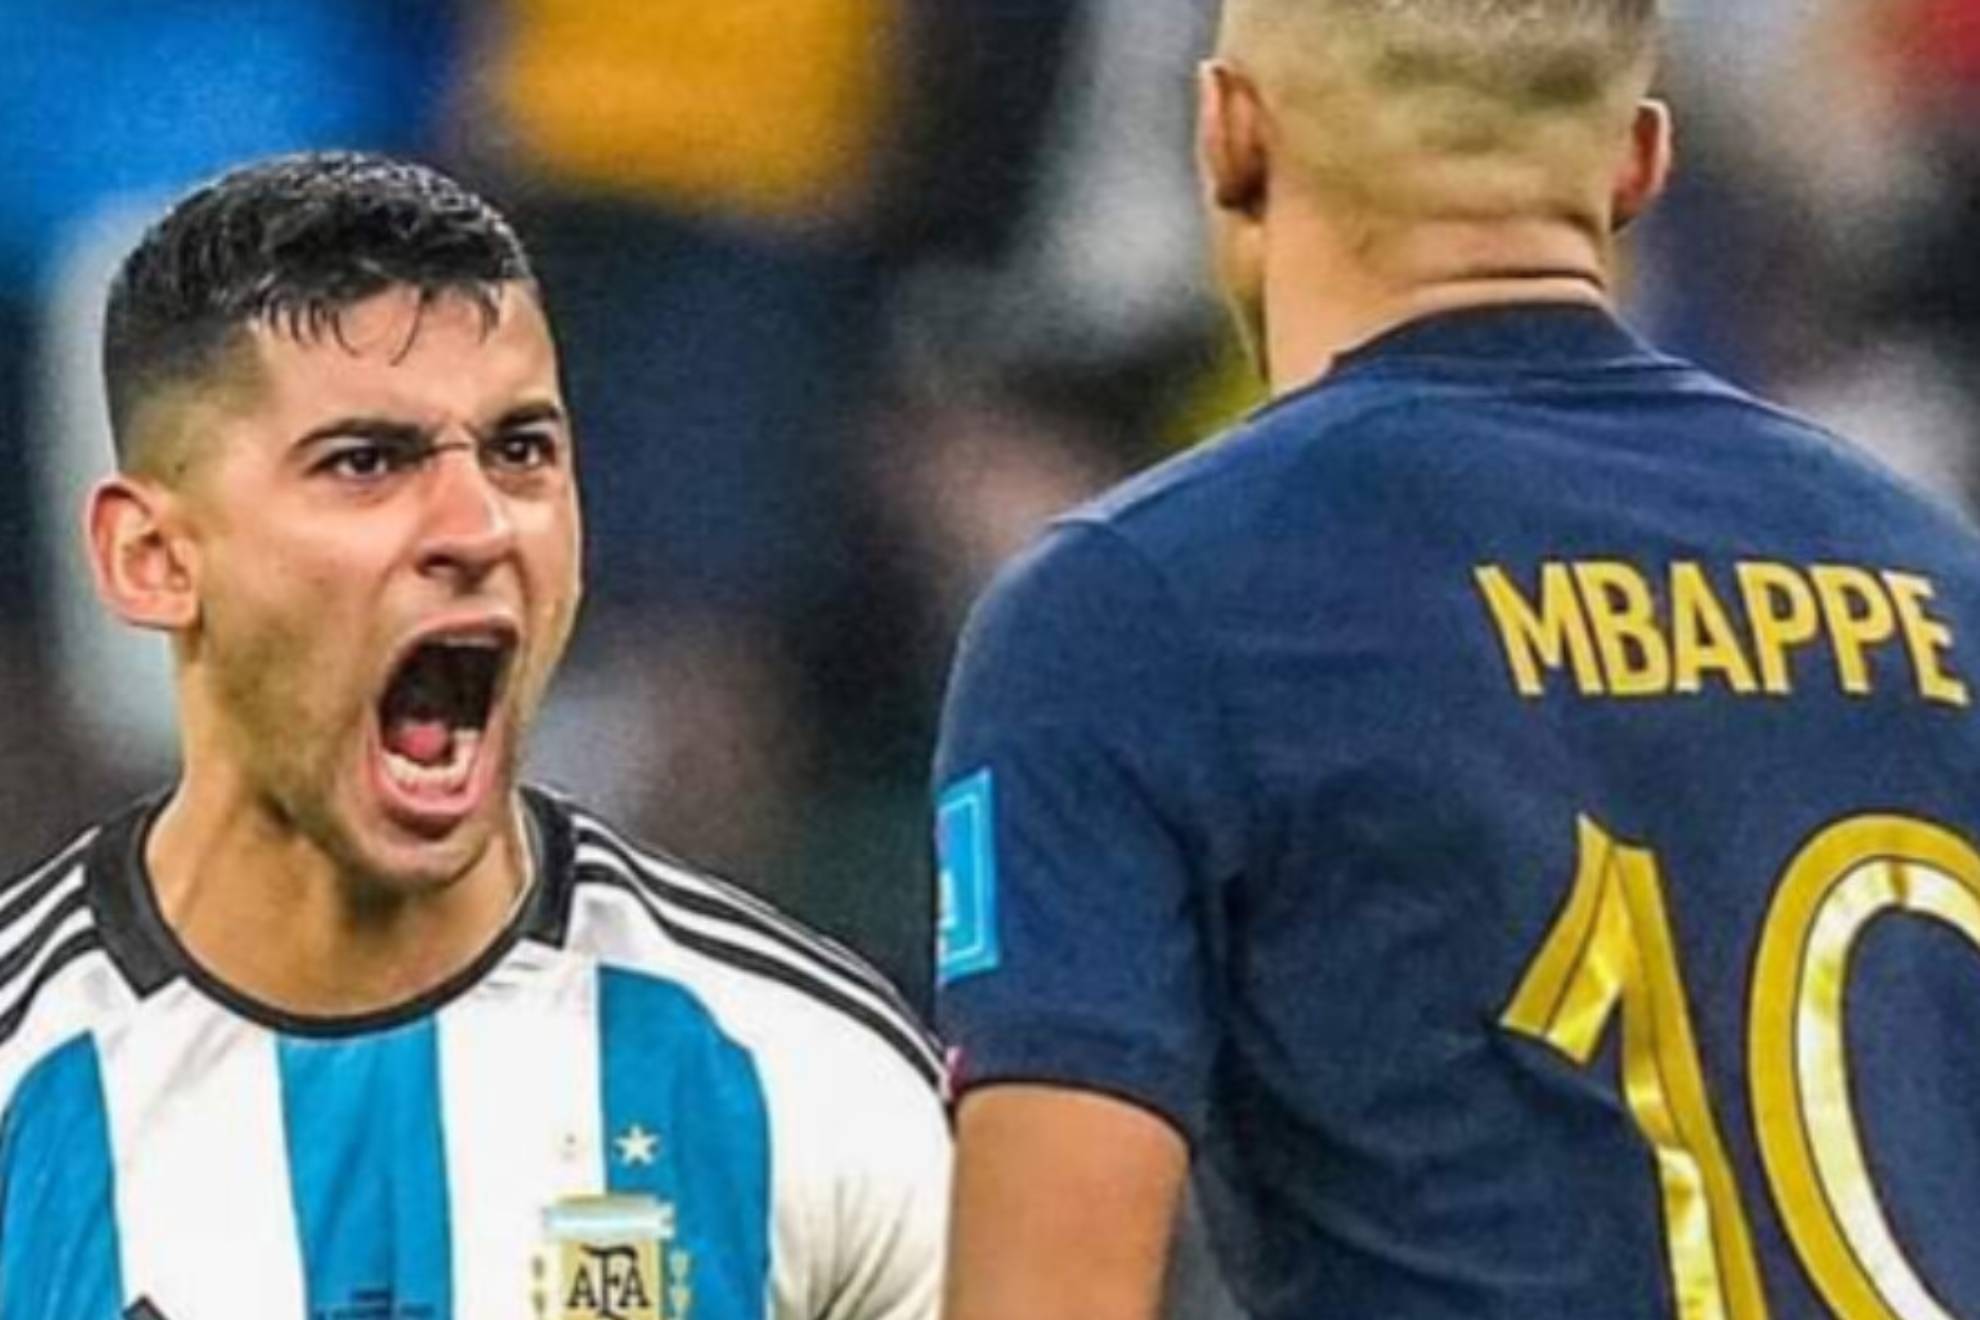 Cuti Romero desvela la venganza por la que le gritó gol a Mbappé en la cara en la final del Mundial